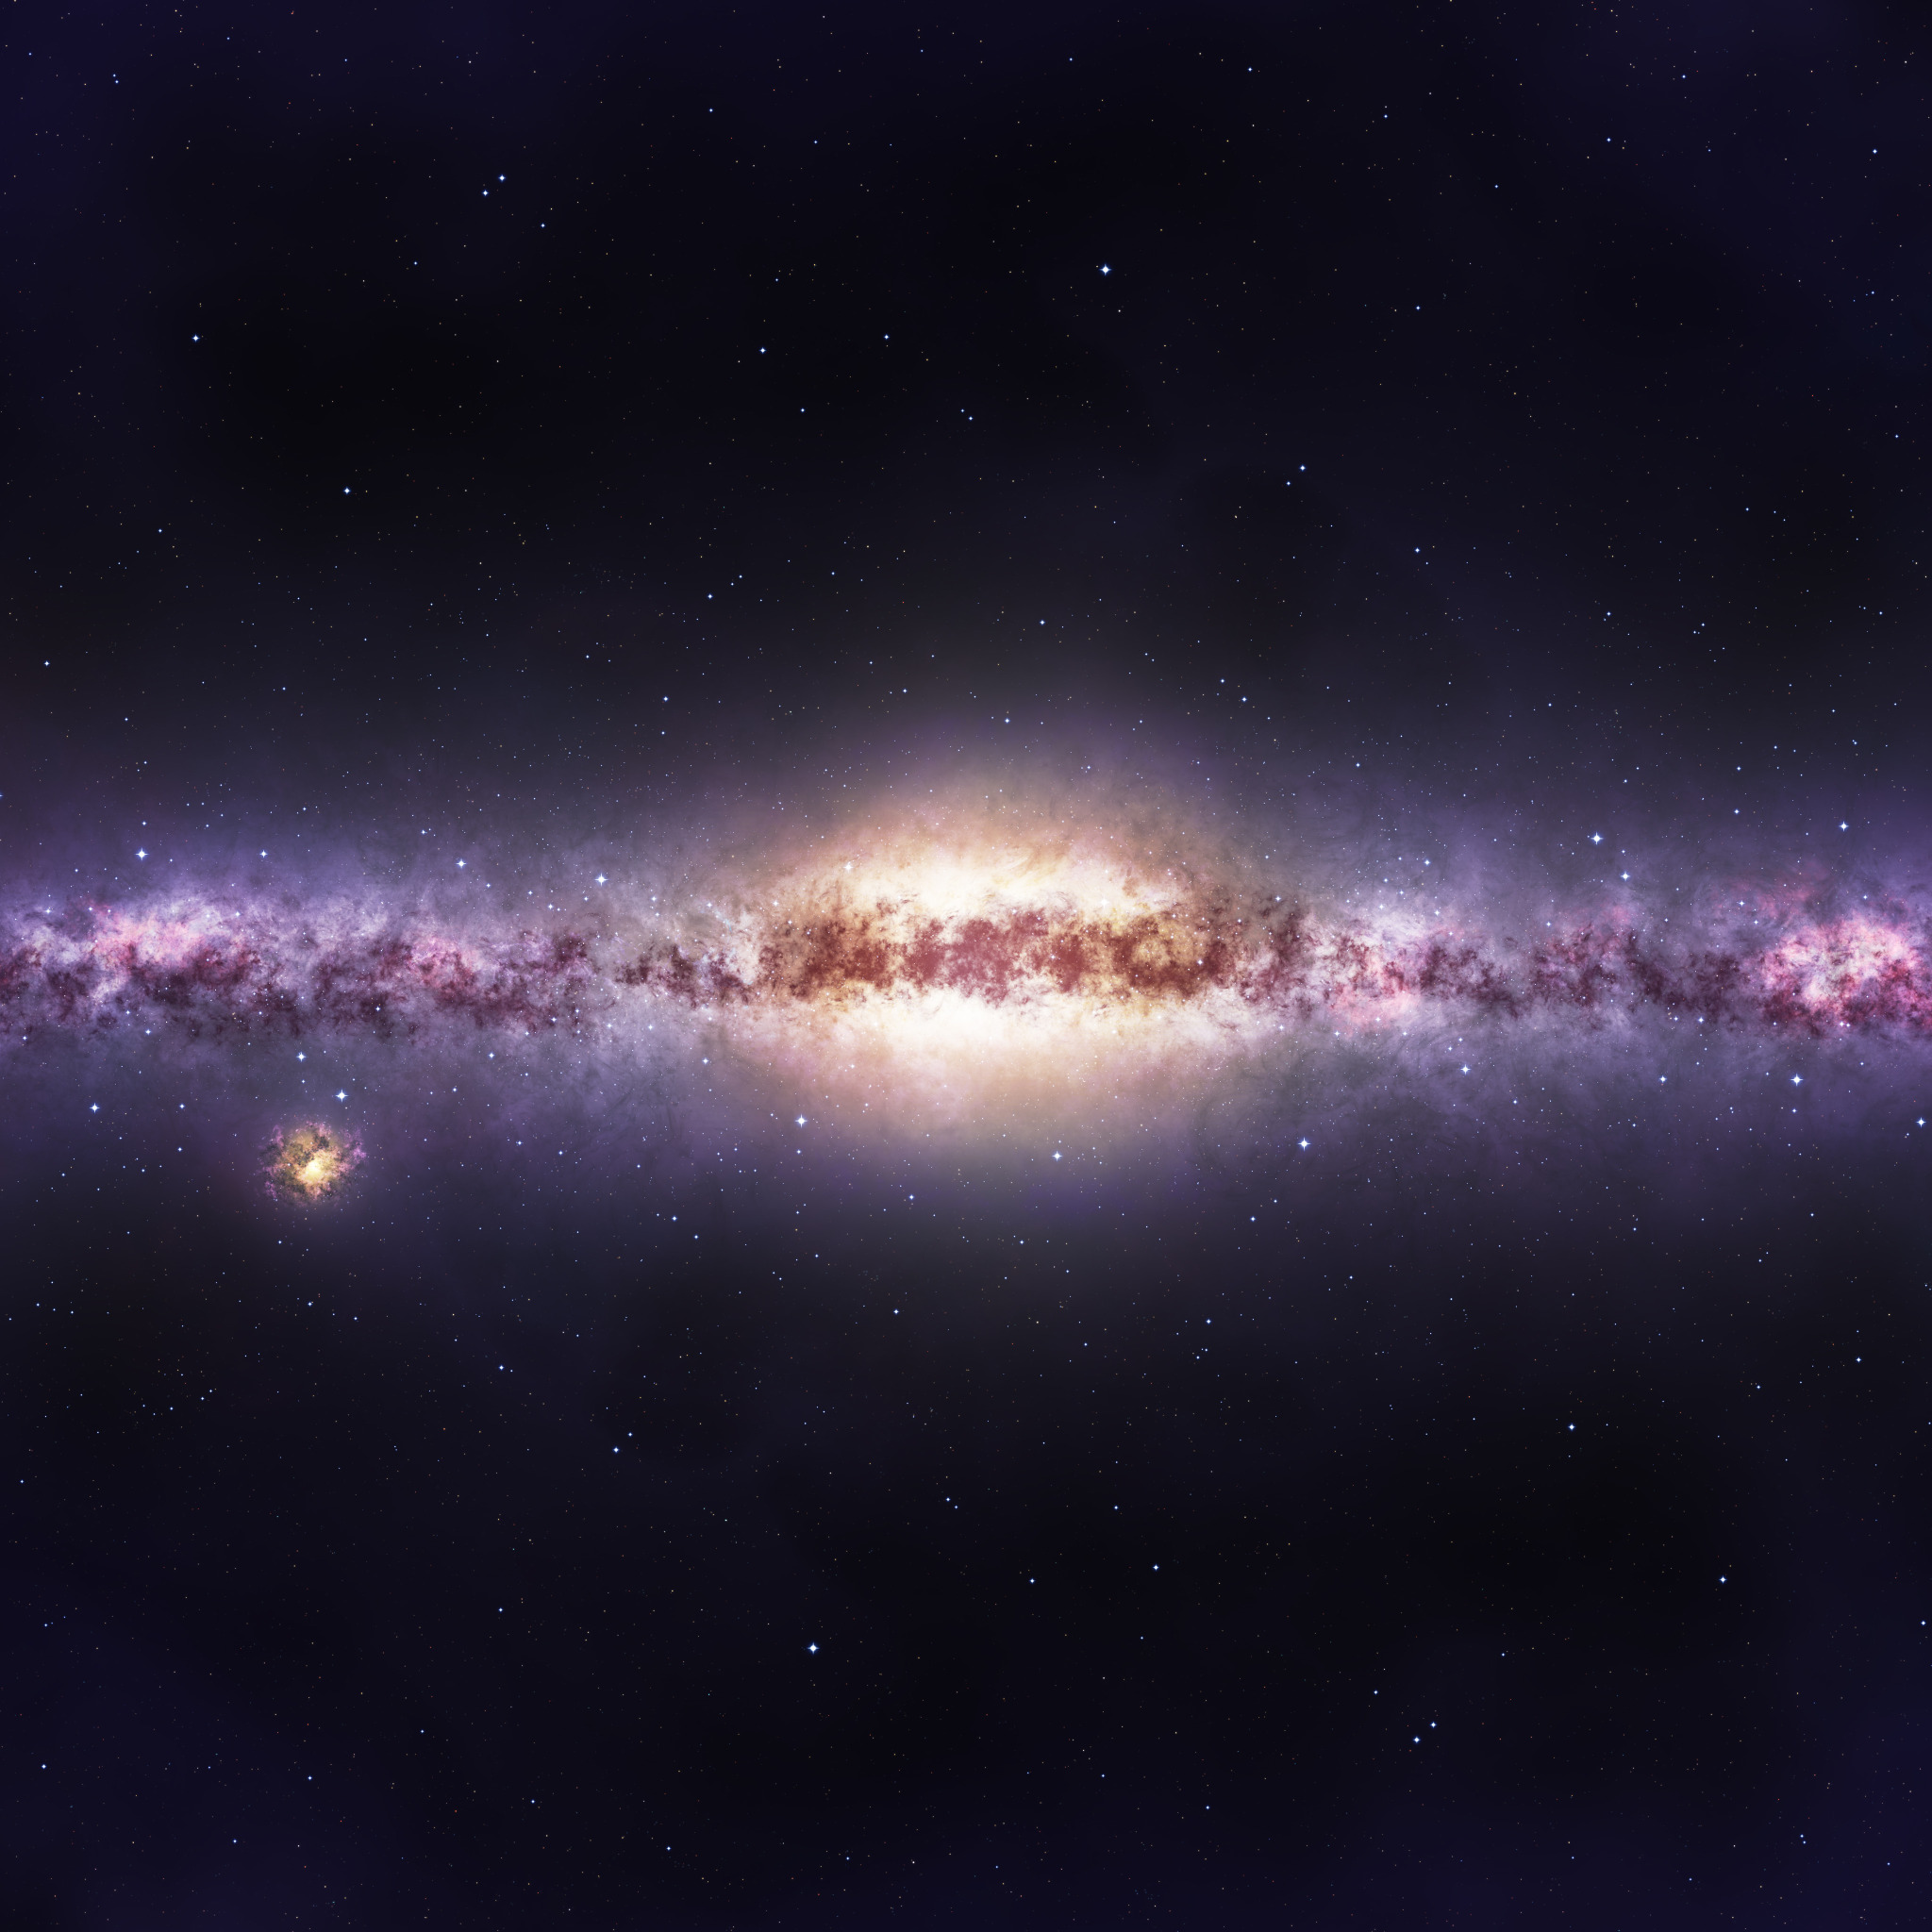 Фотографии размером 1024 2048 пикселей сохранили. Наша Галактика Млечный путь. Милки Вэй Галактика. Млечный путь космос. Баннер космос.